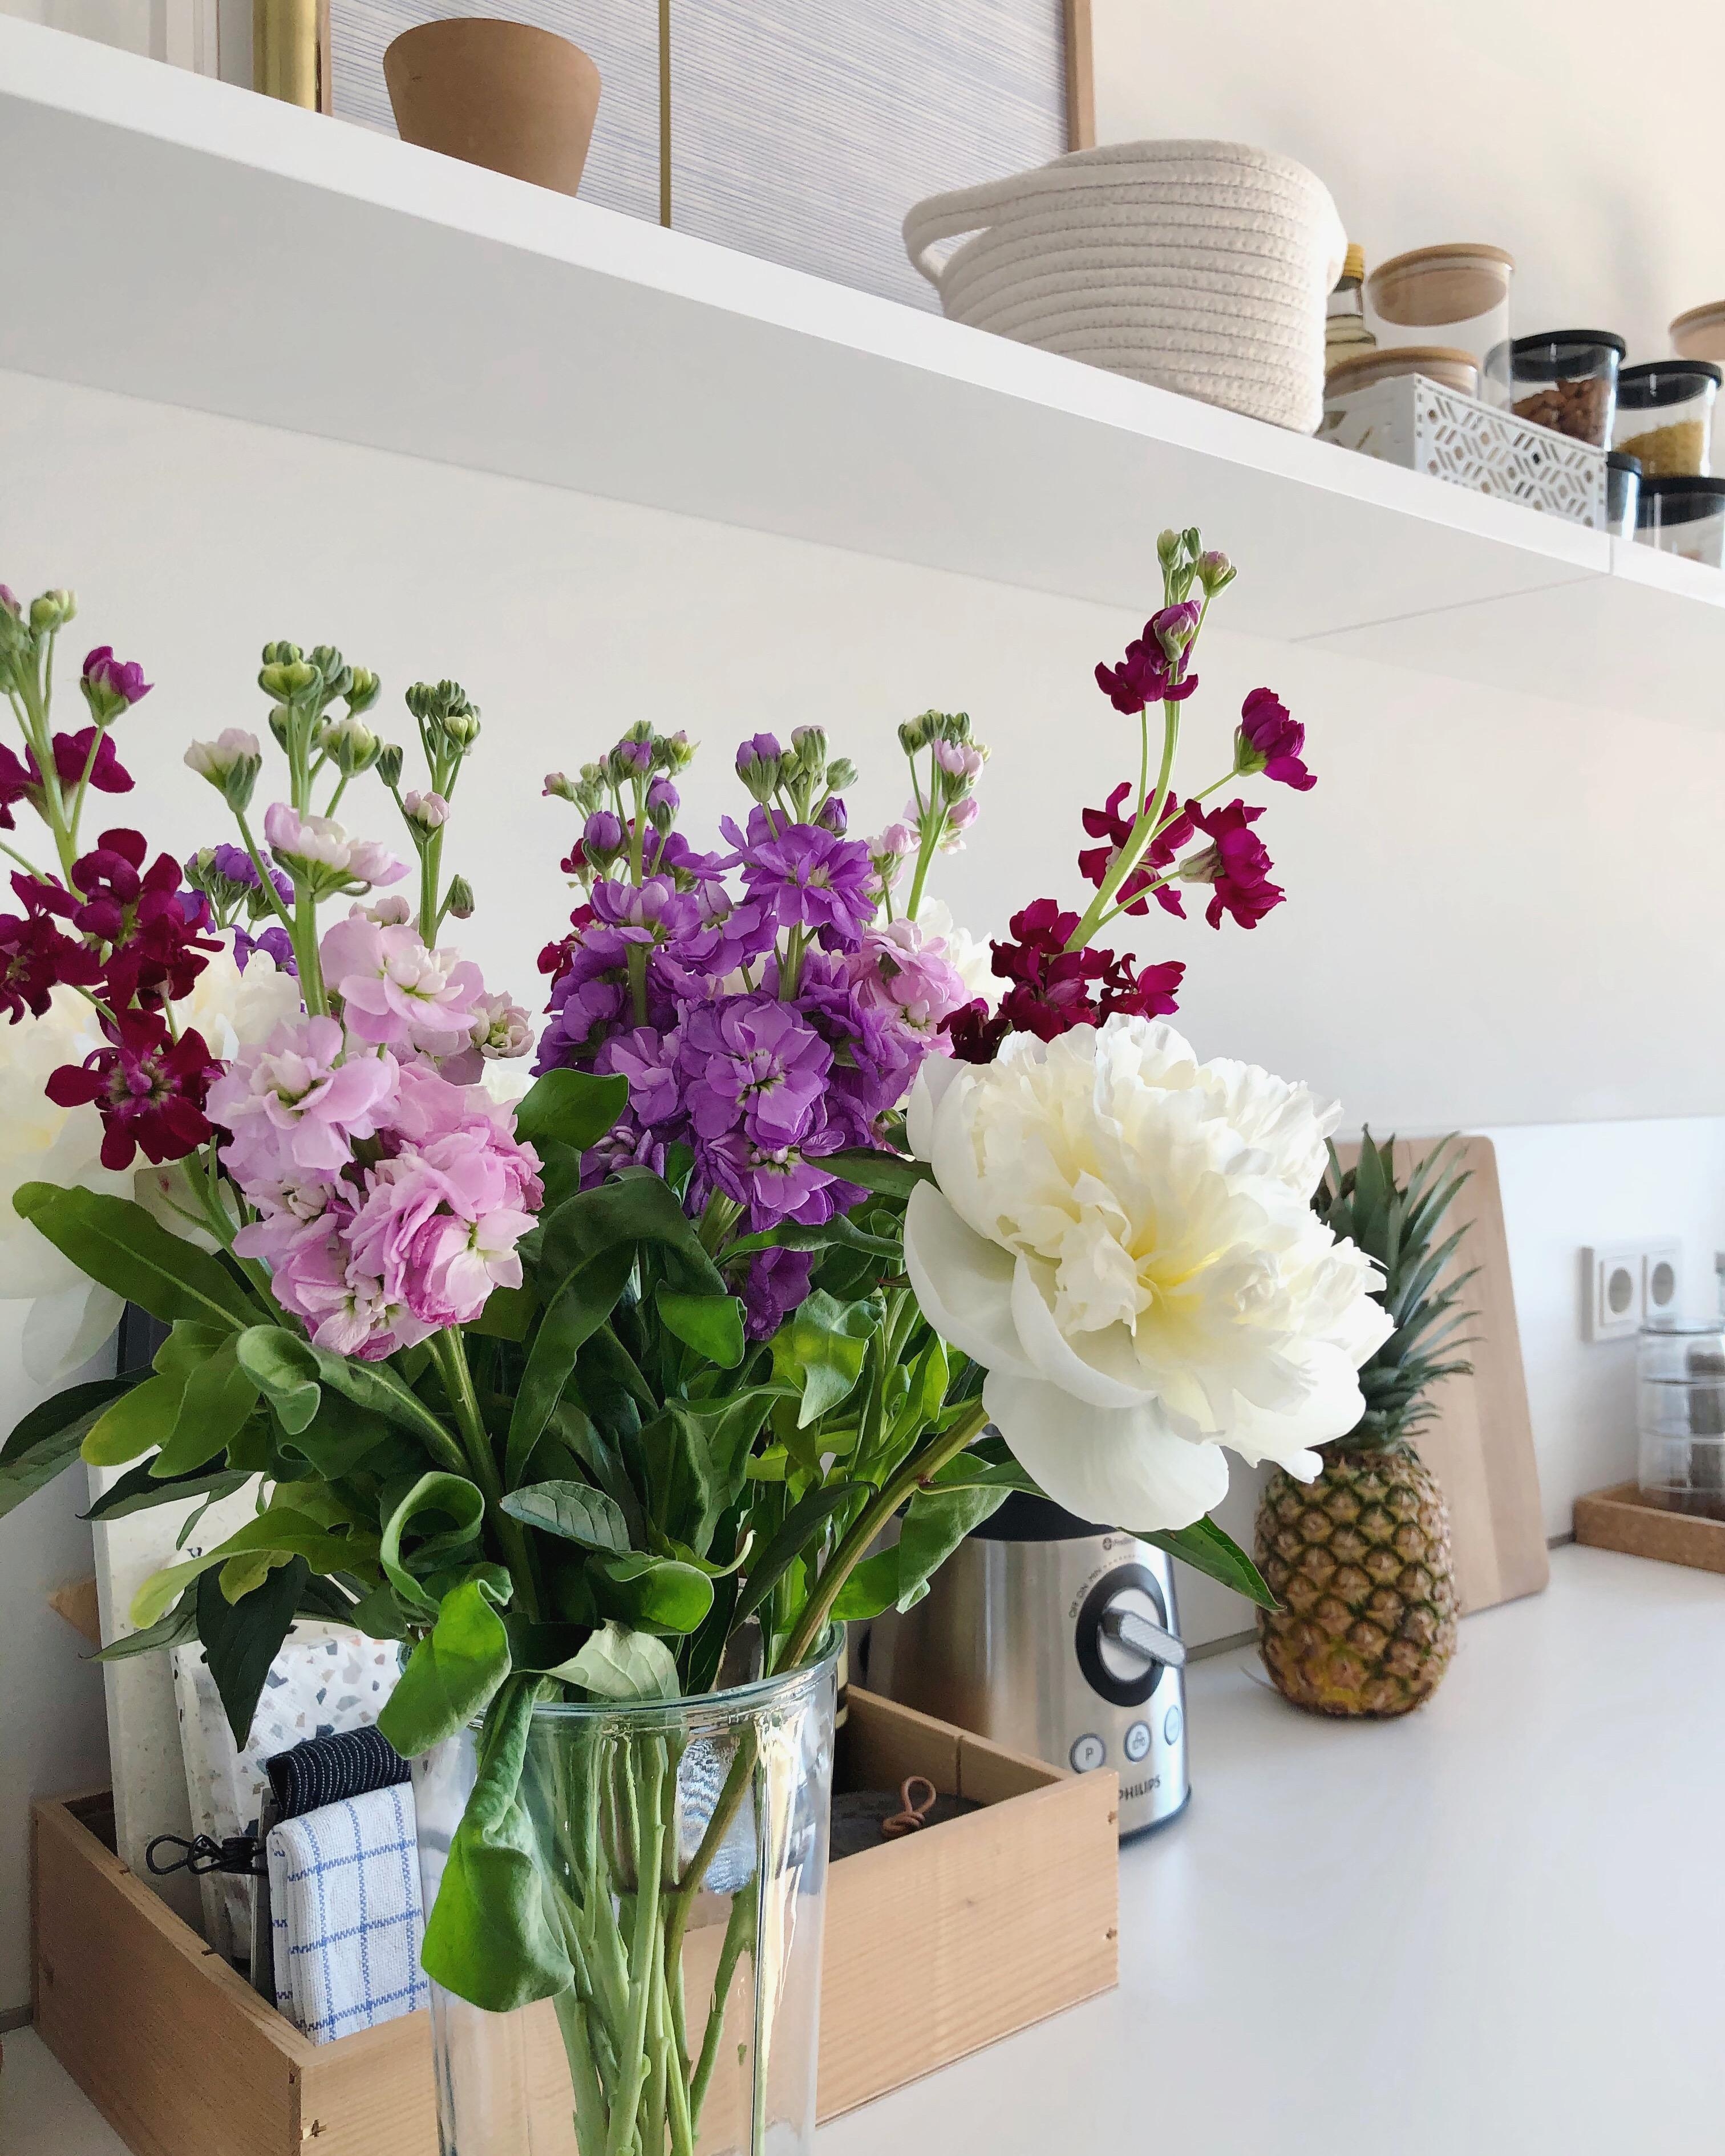 #freshflowers zum Wochenstart 🌸
#flowers #blumen #kitchen #küche #homedecor #home #dekoration #interior 